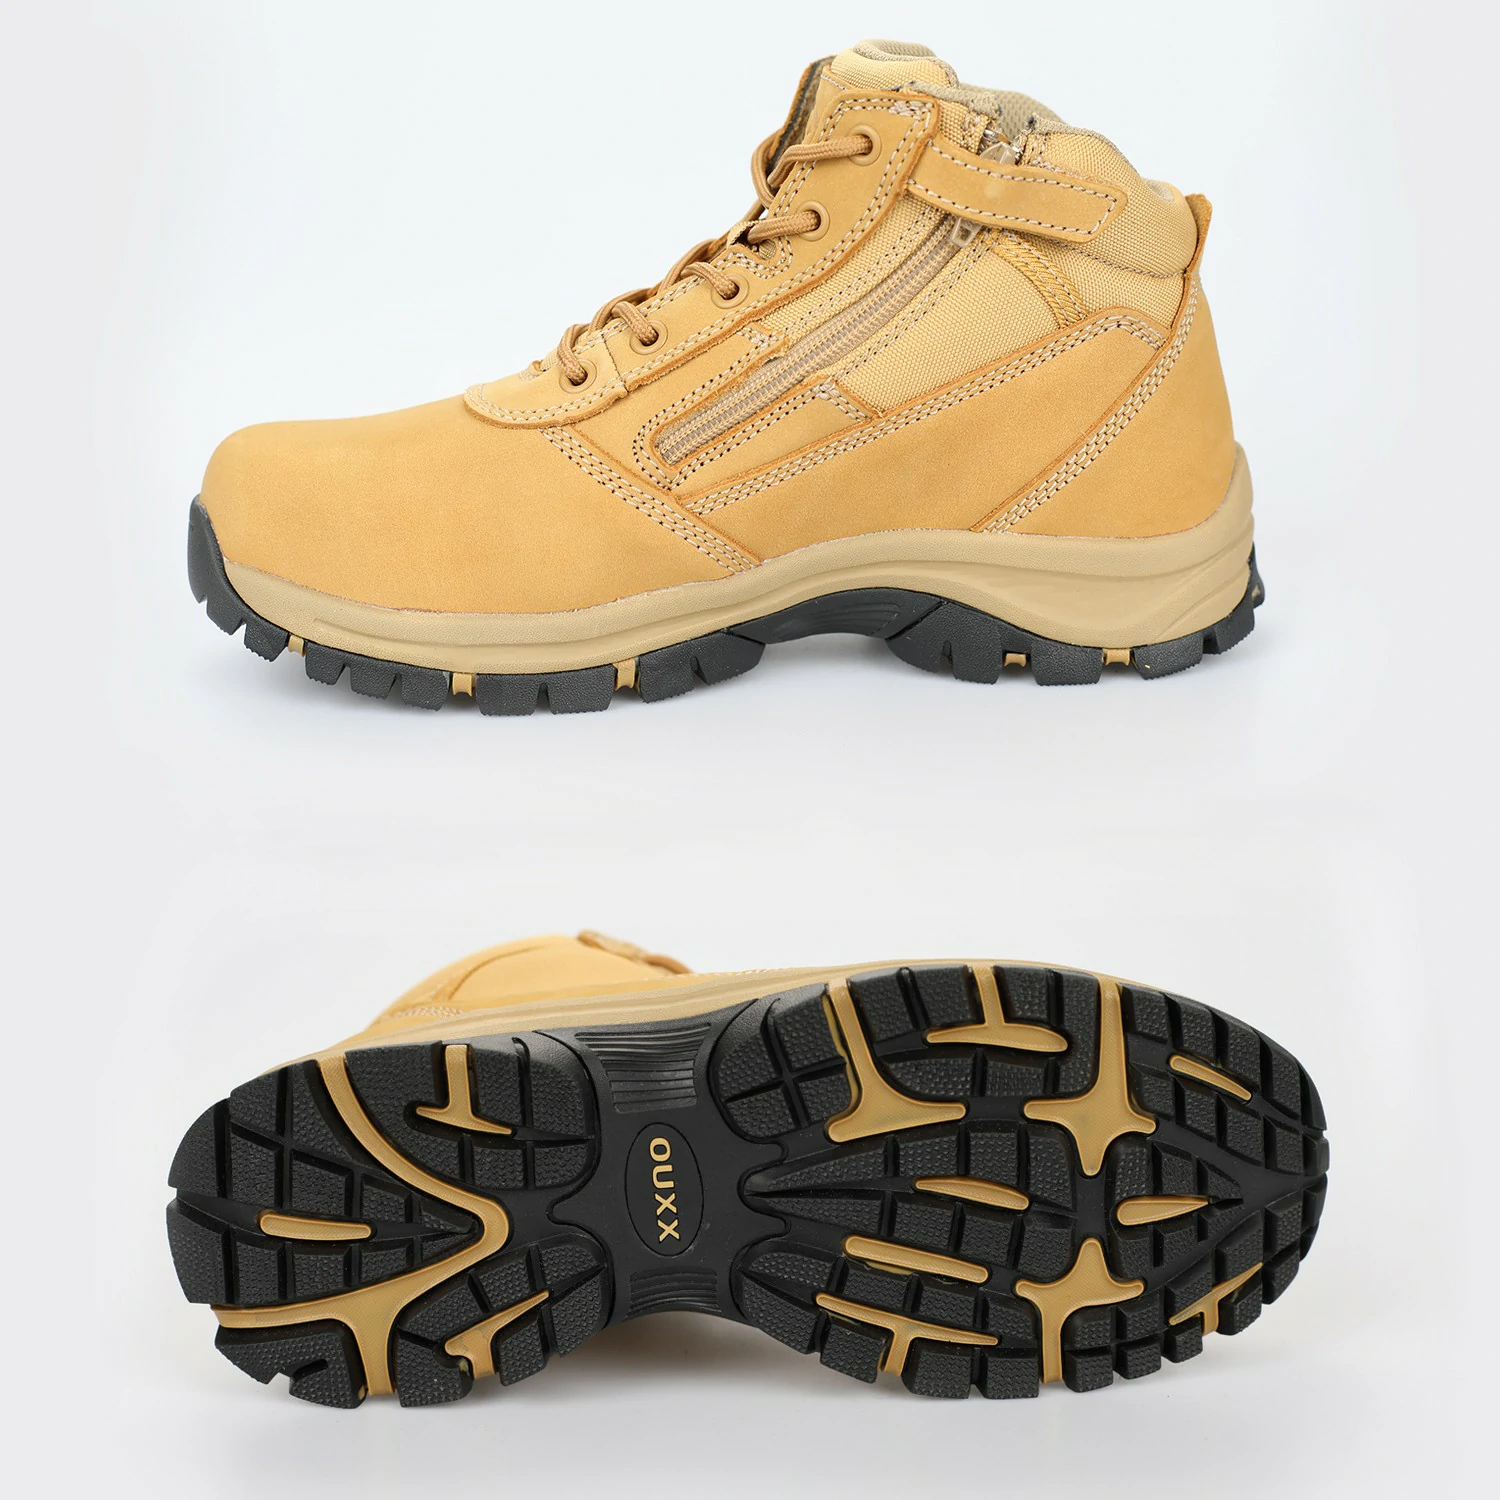 OX2519_www.ouxxsafety.com-3_Workboots_Workshoes_ouxxshoes_ouxxboots_non slip shoes_work boots for men